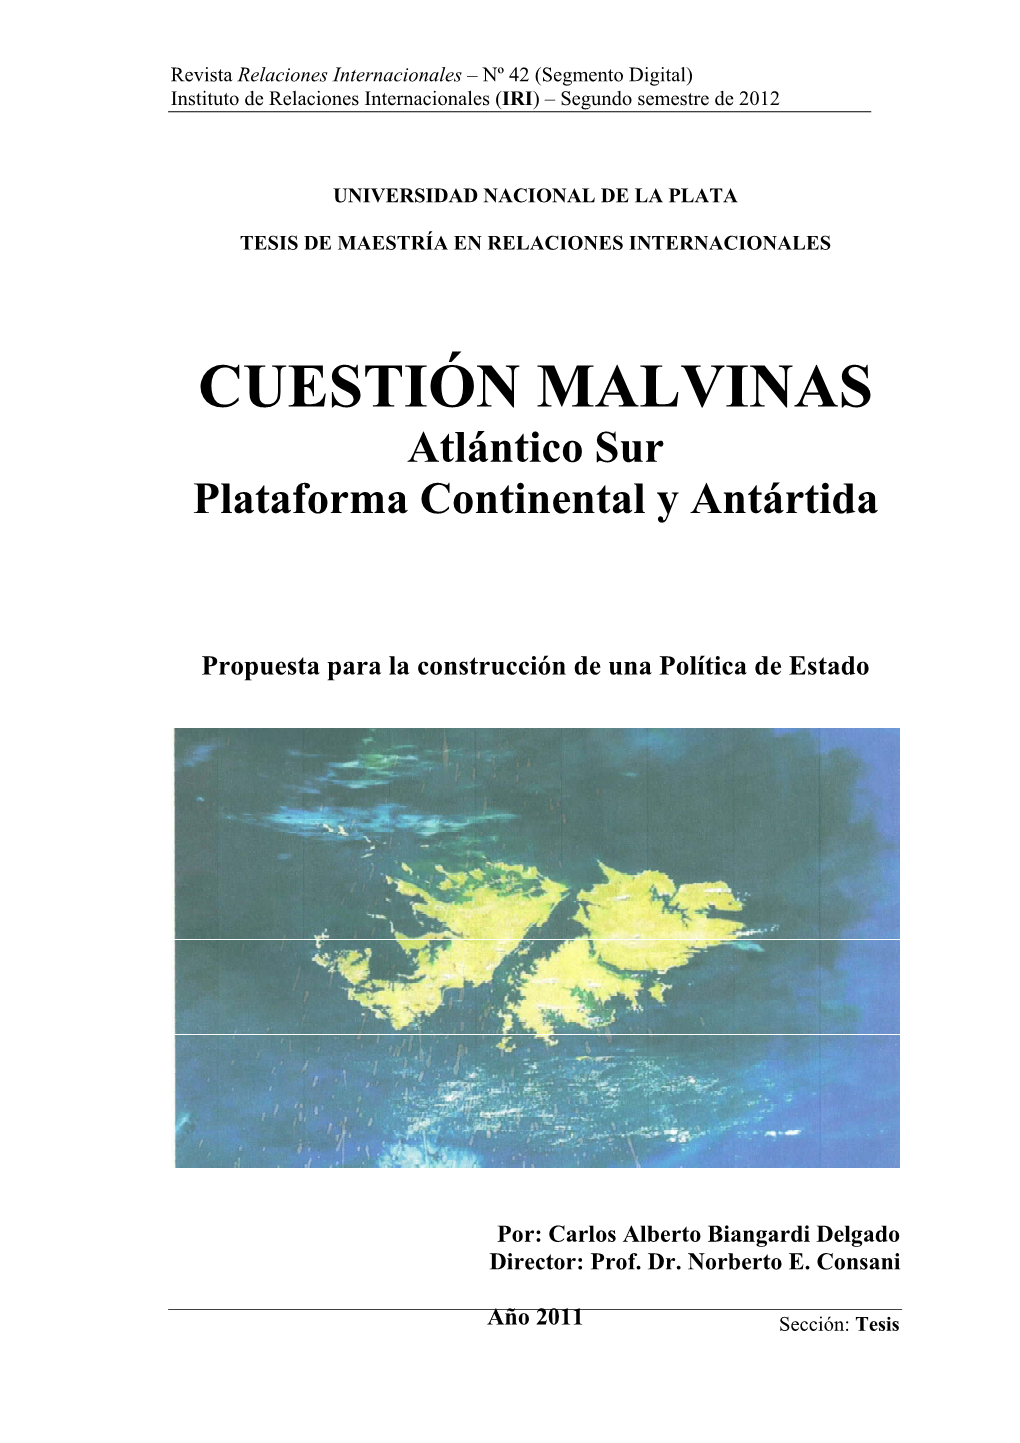 CUESTIÓN MALVINAS Atlántico Sur Plataforma Continental Y Antártida